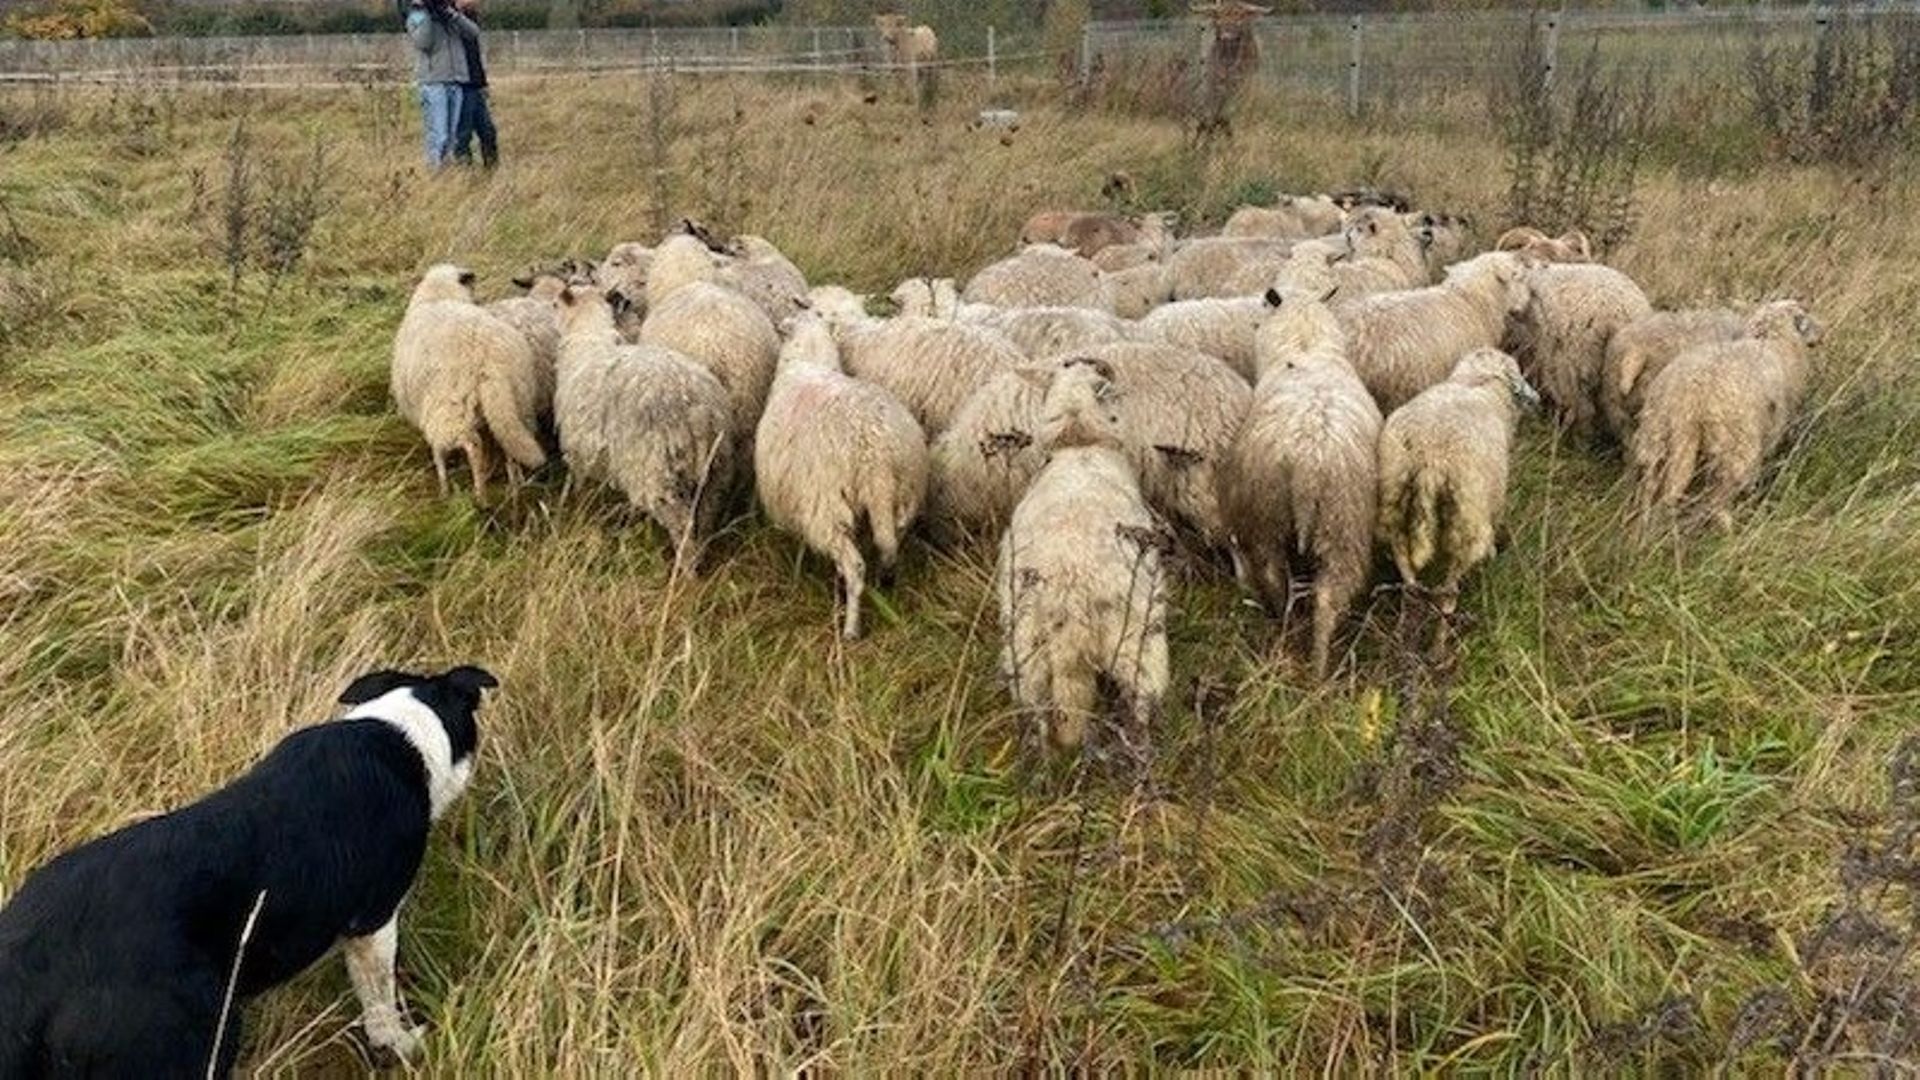 Le border collie Obi-Wan écoute les ordres que lui siffle son maître afin de guider les moutons de cet éco-pâturage.